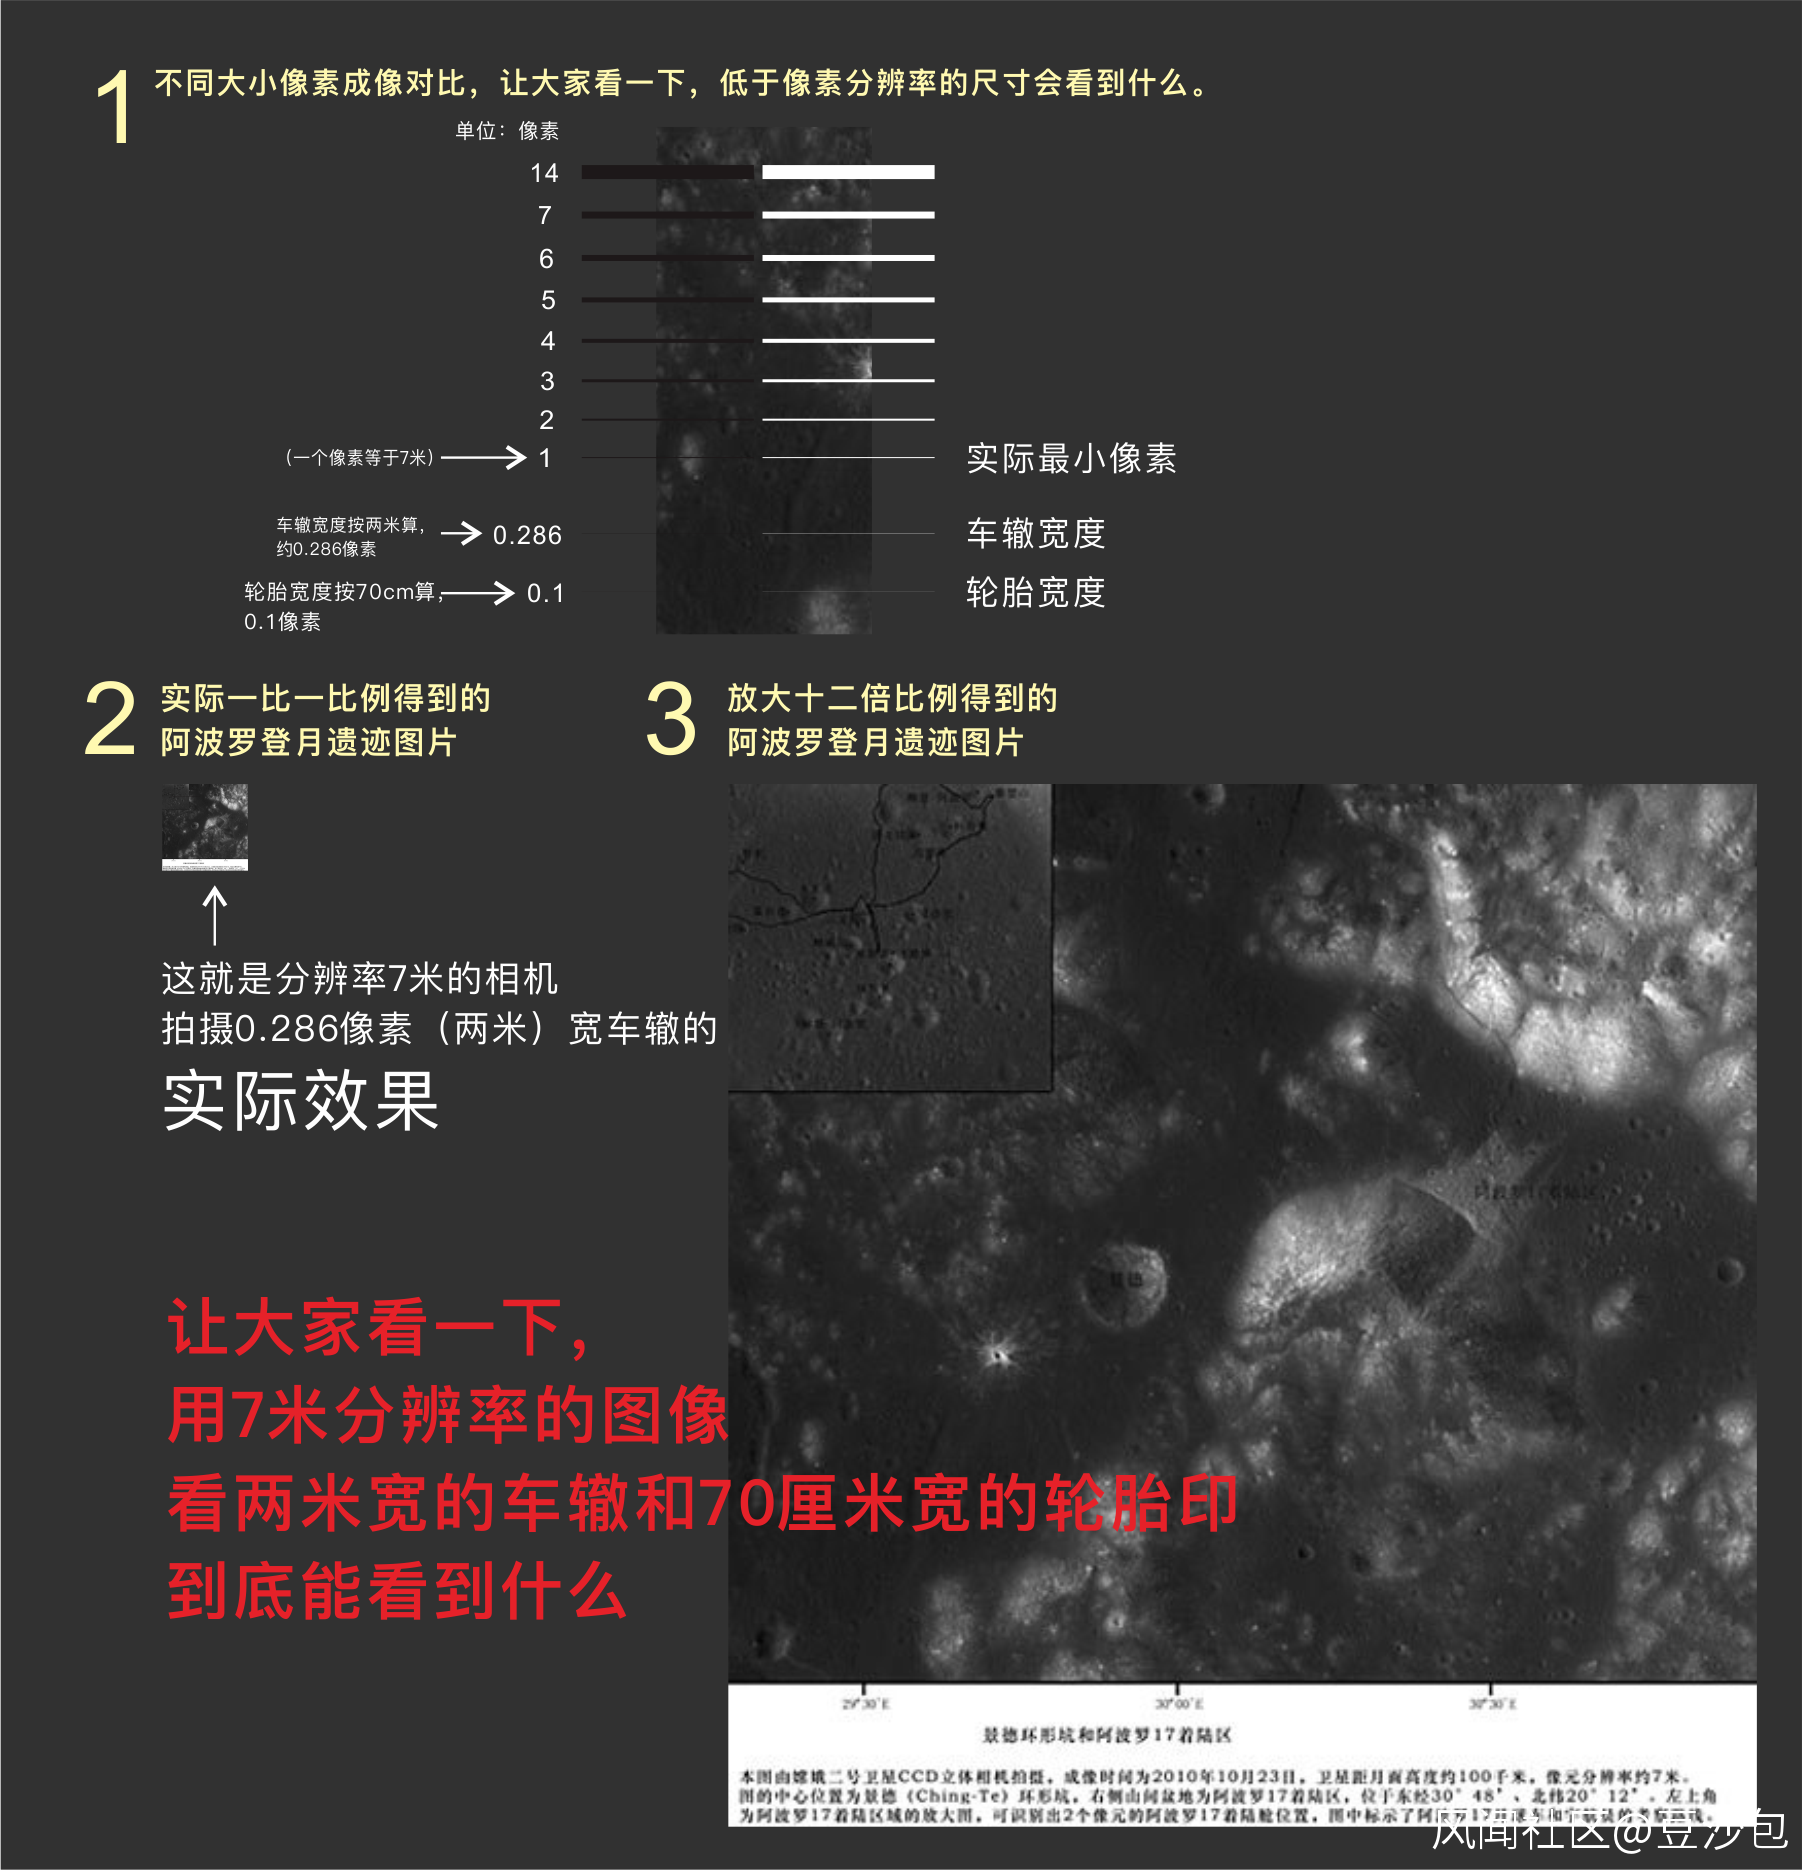 揭秘中国7米分辨率相机看阿波罗登月遗迹真相 第1张